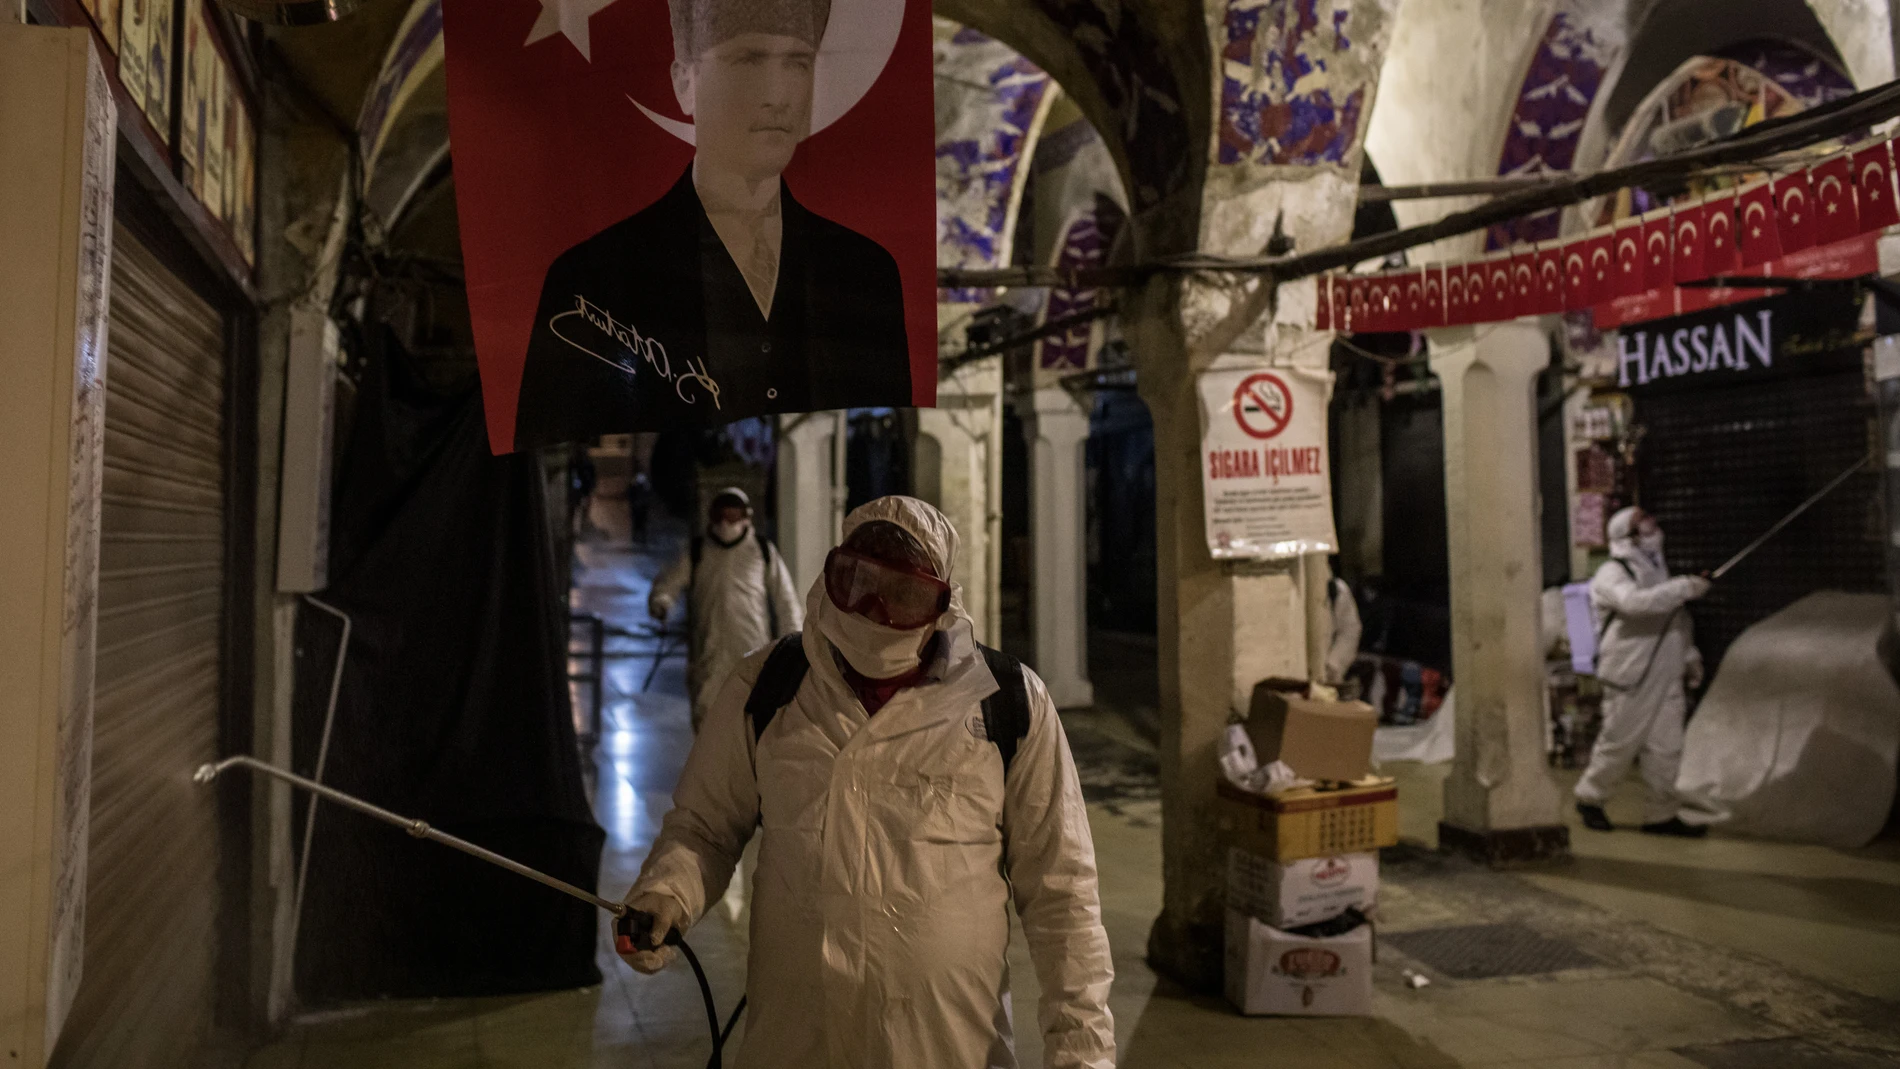 Operarios sanitarios realizan labores de limpieza en el Gran Bazar de Estambul (Turquía)